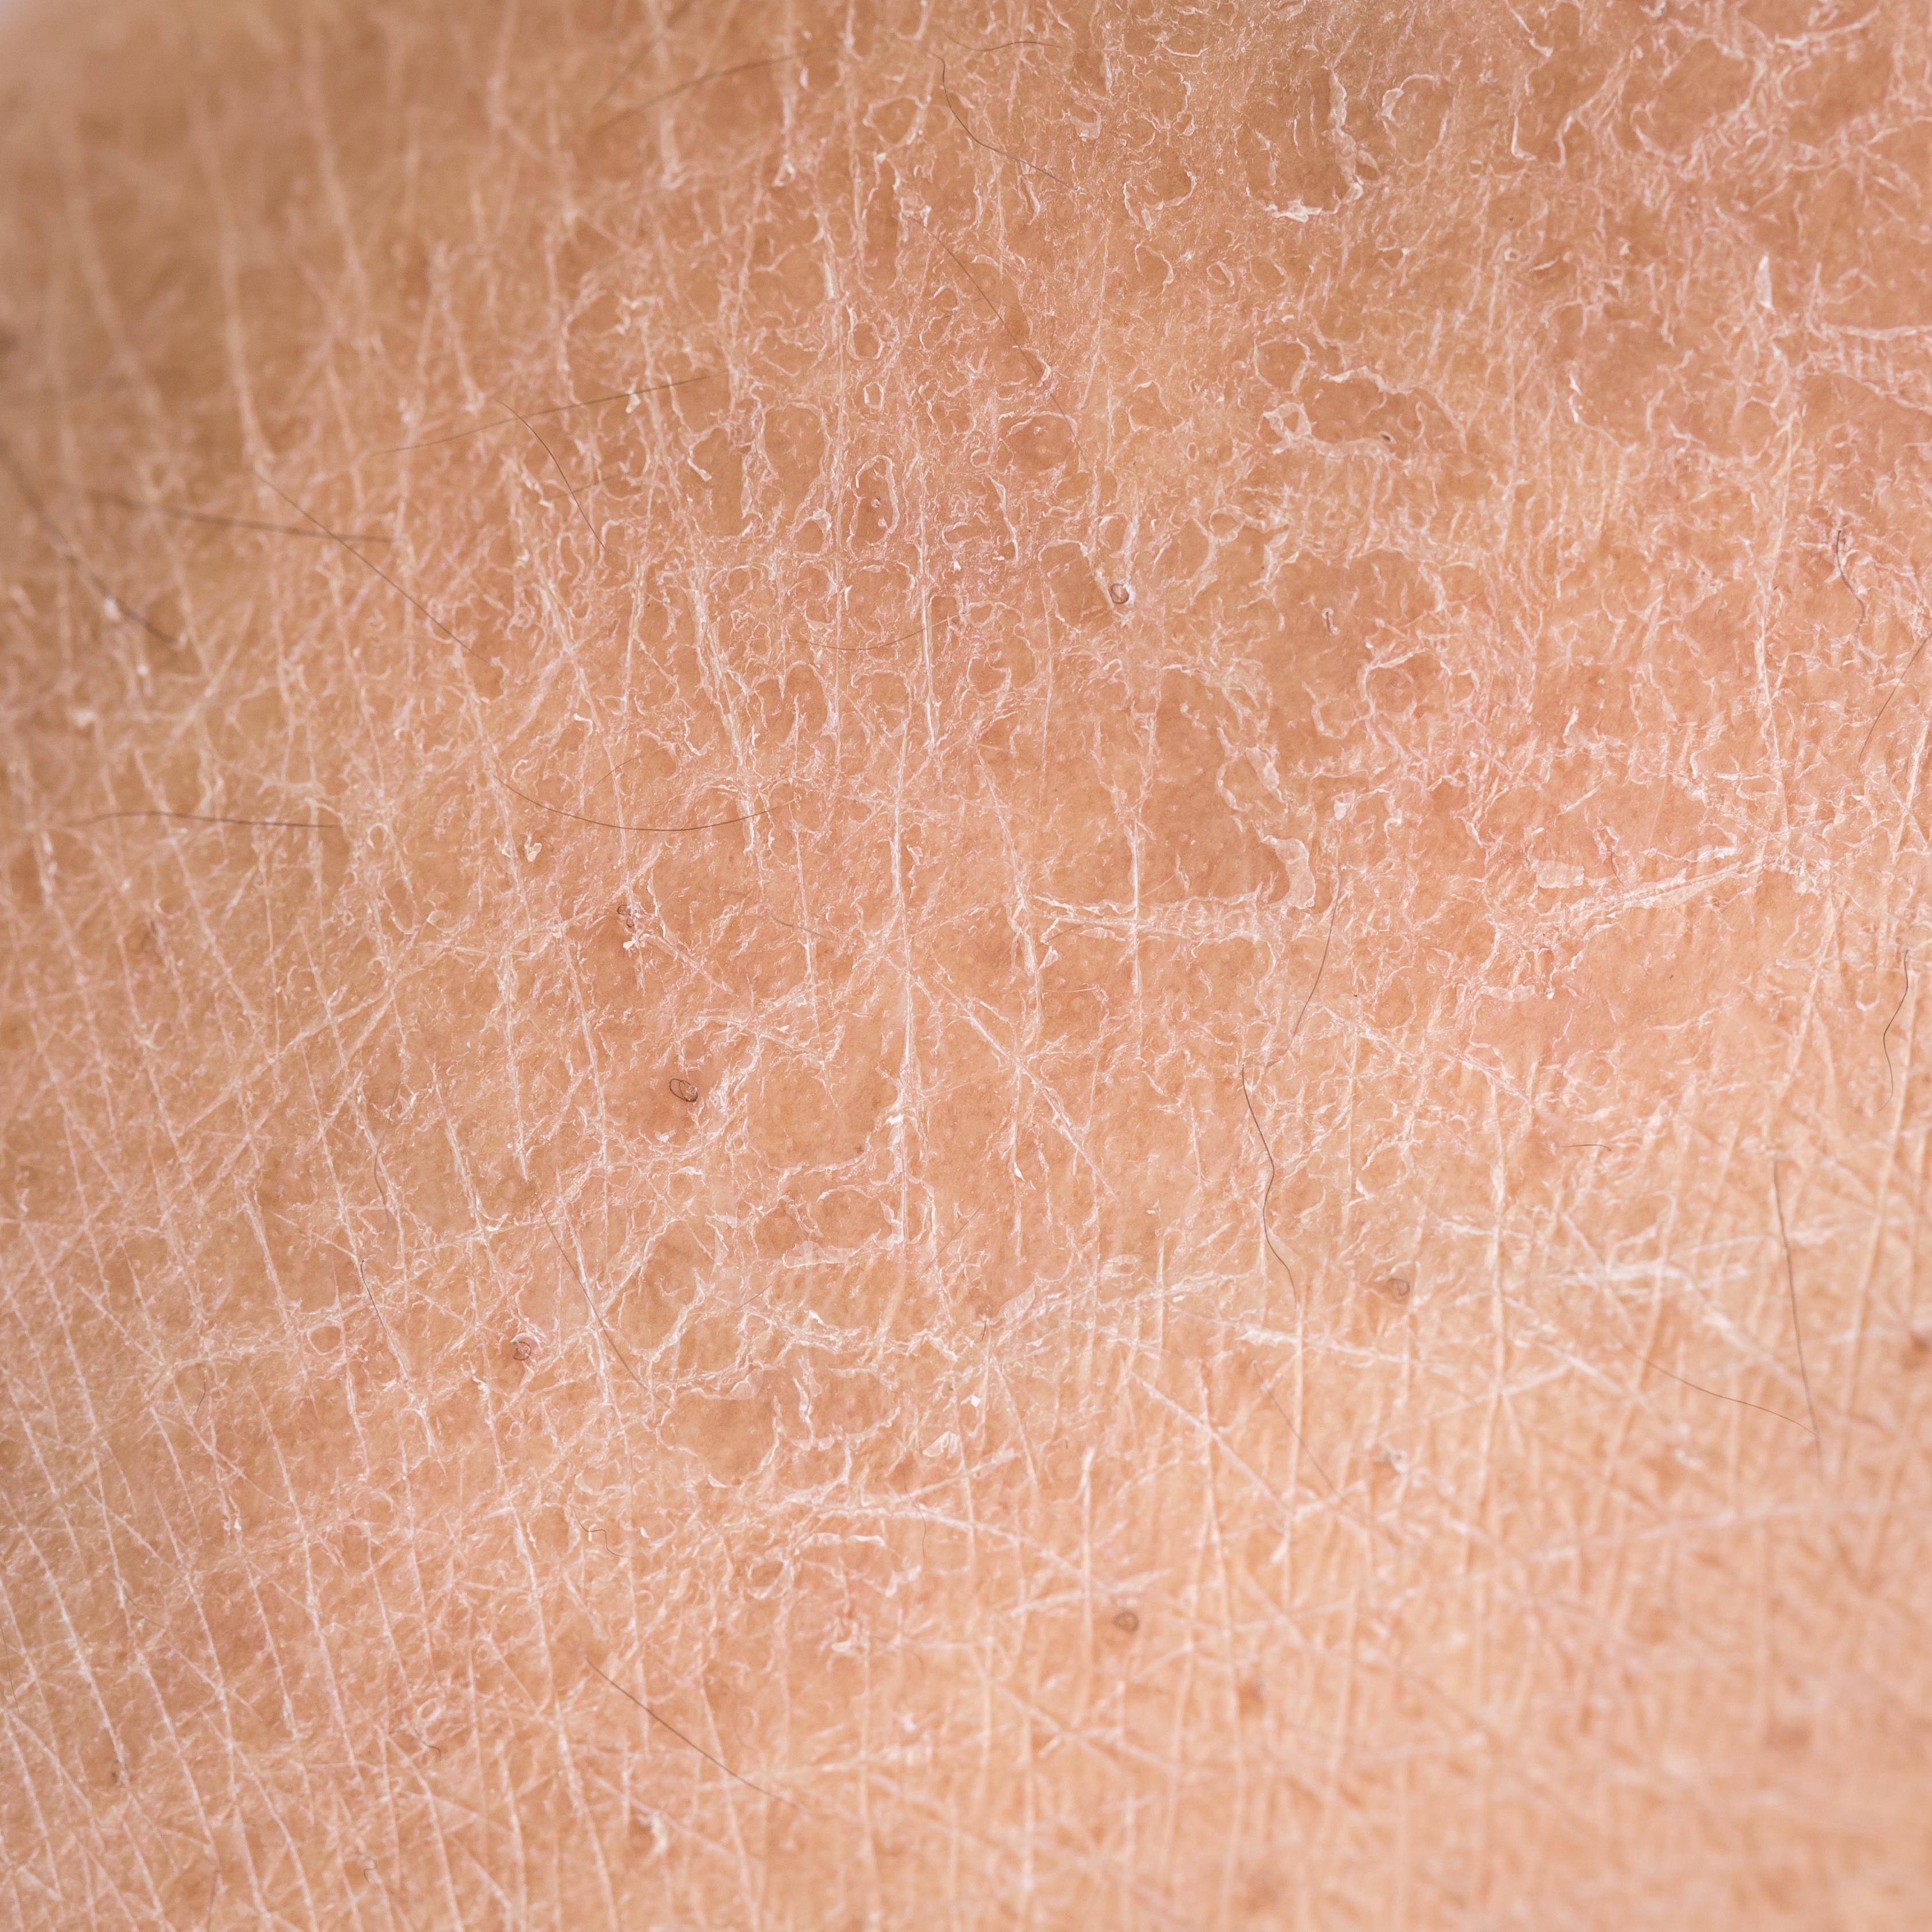 常见皮肤科皮肤病损的形态和分布